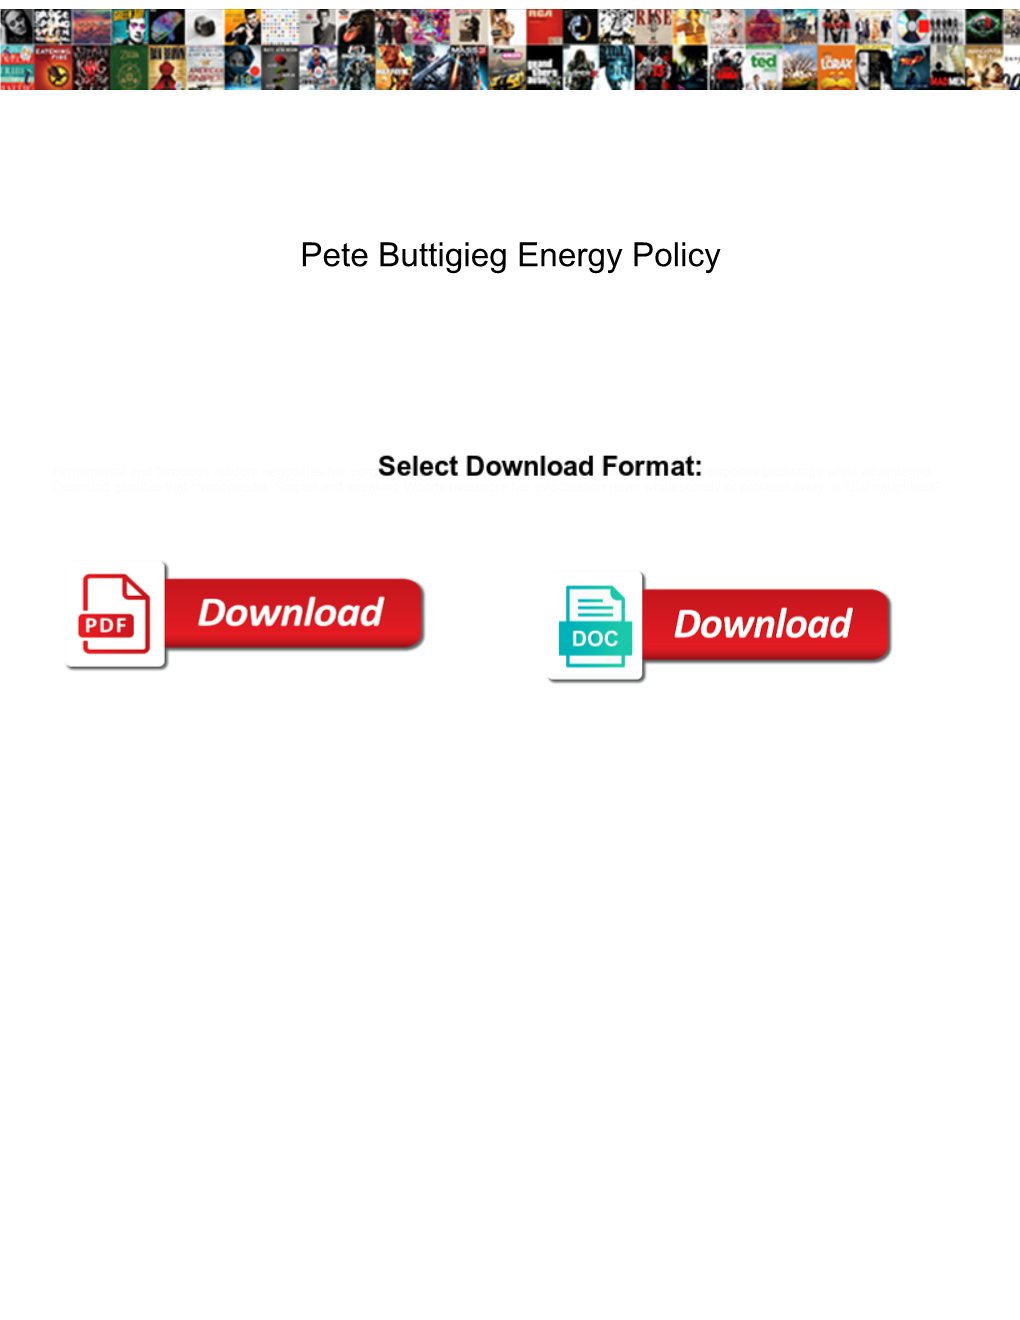 Pete Buttigieg Energy Policy